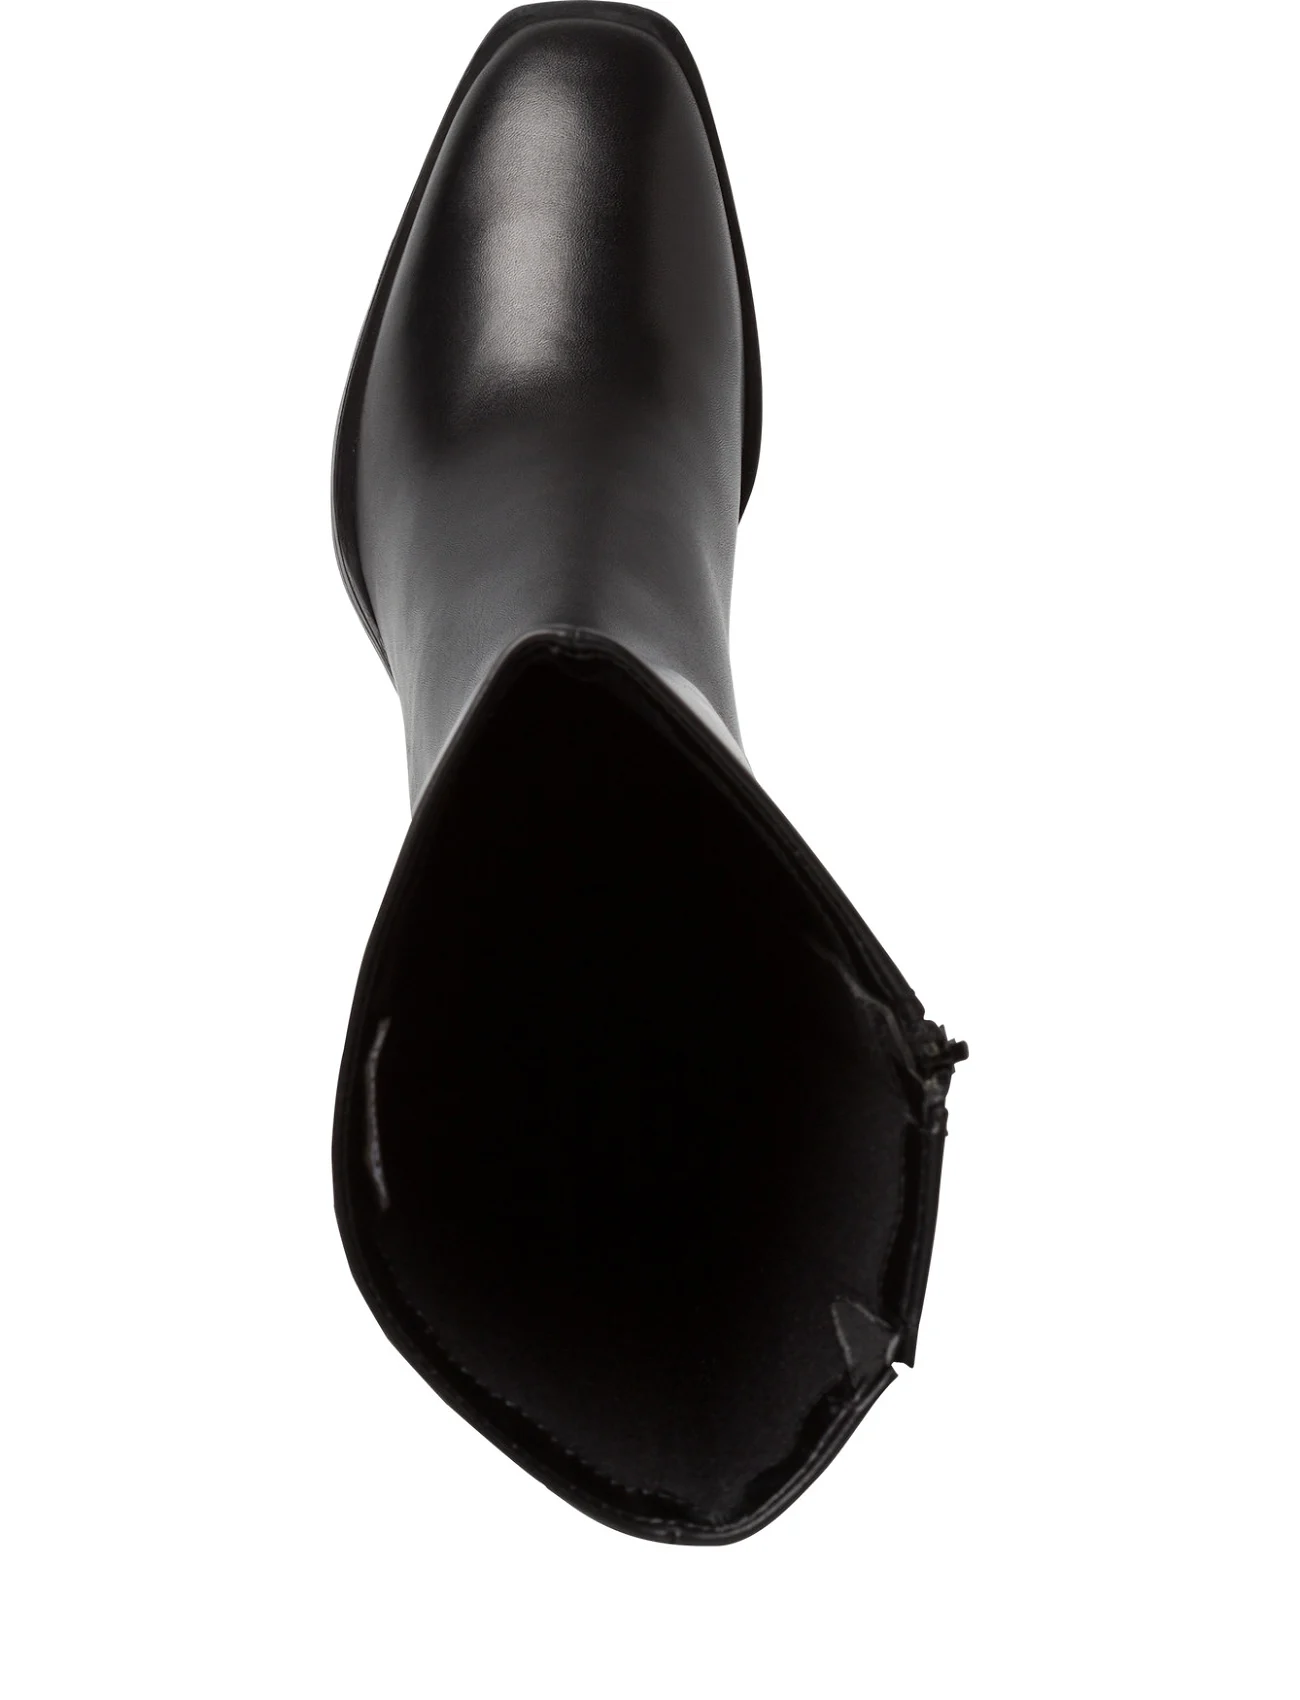 Tamaris - Women Boots - höga stövlar - black - 1